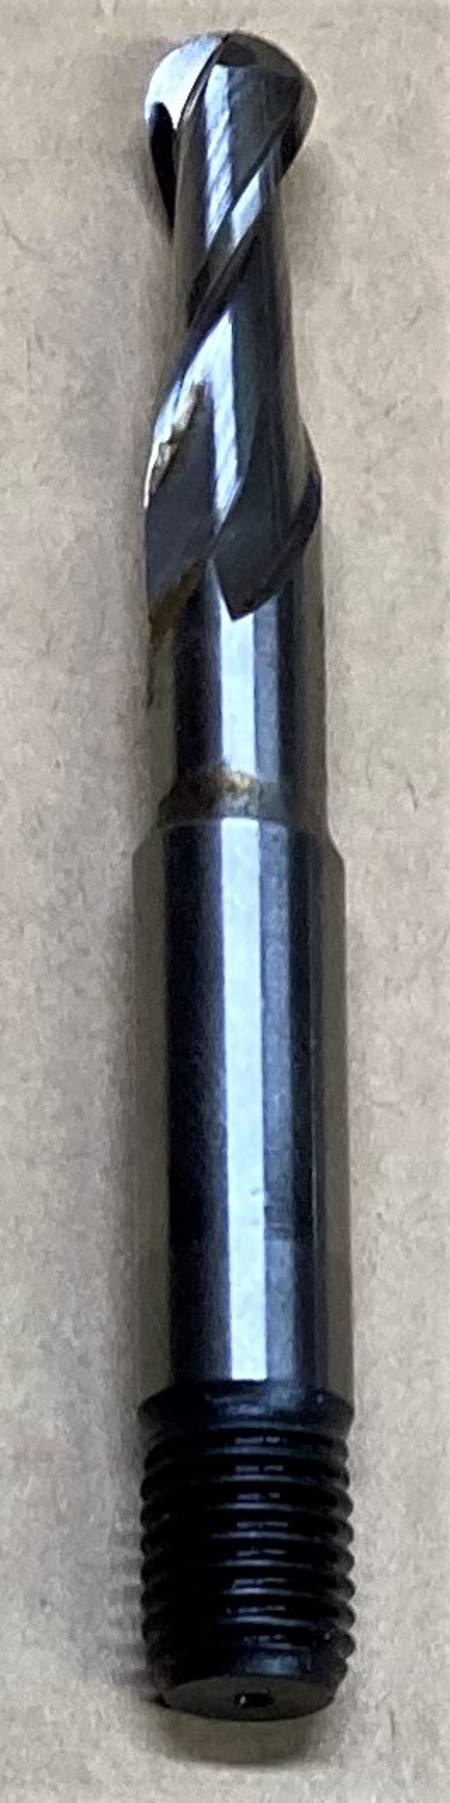 5/16" ball end slot drill, long thread